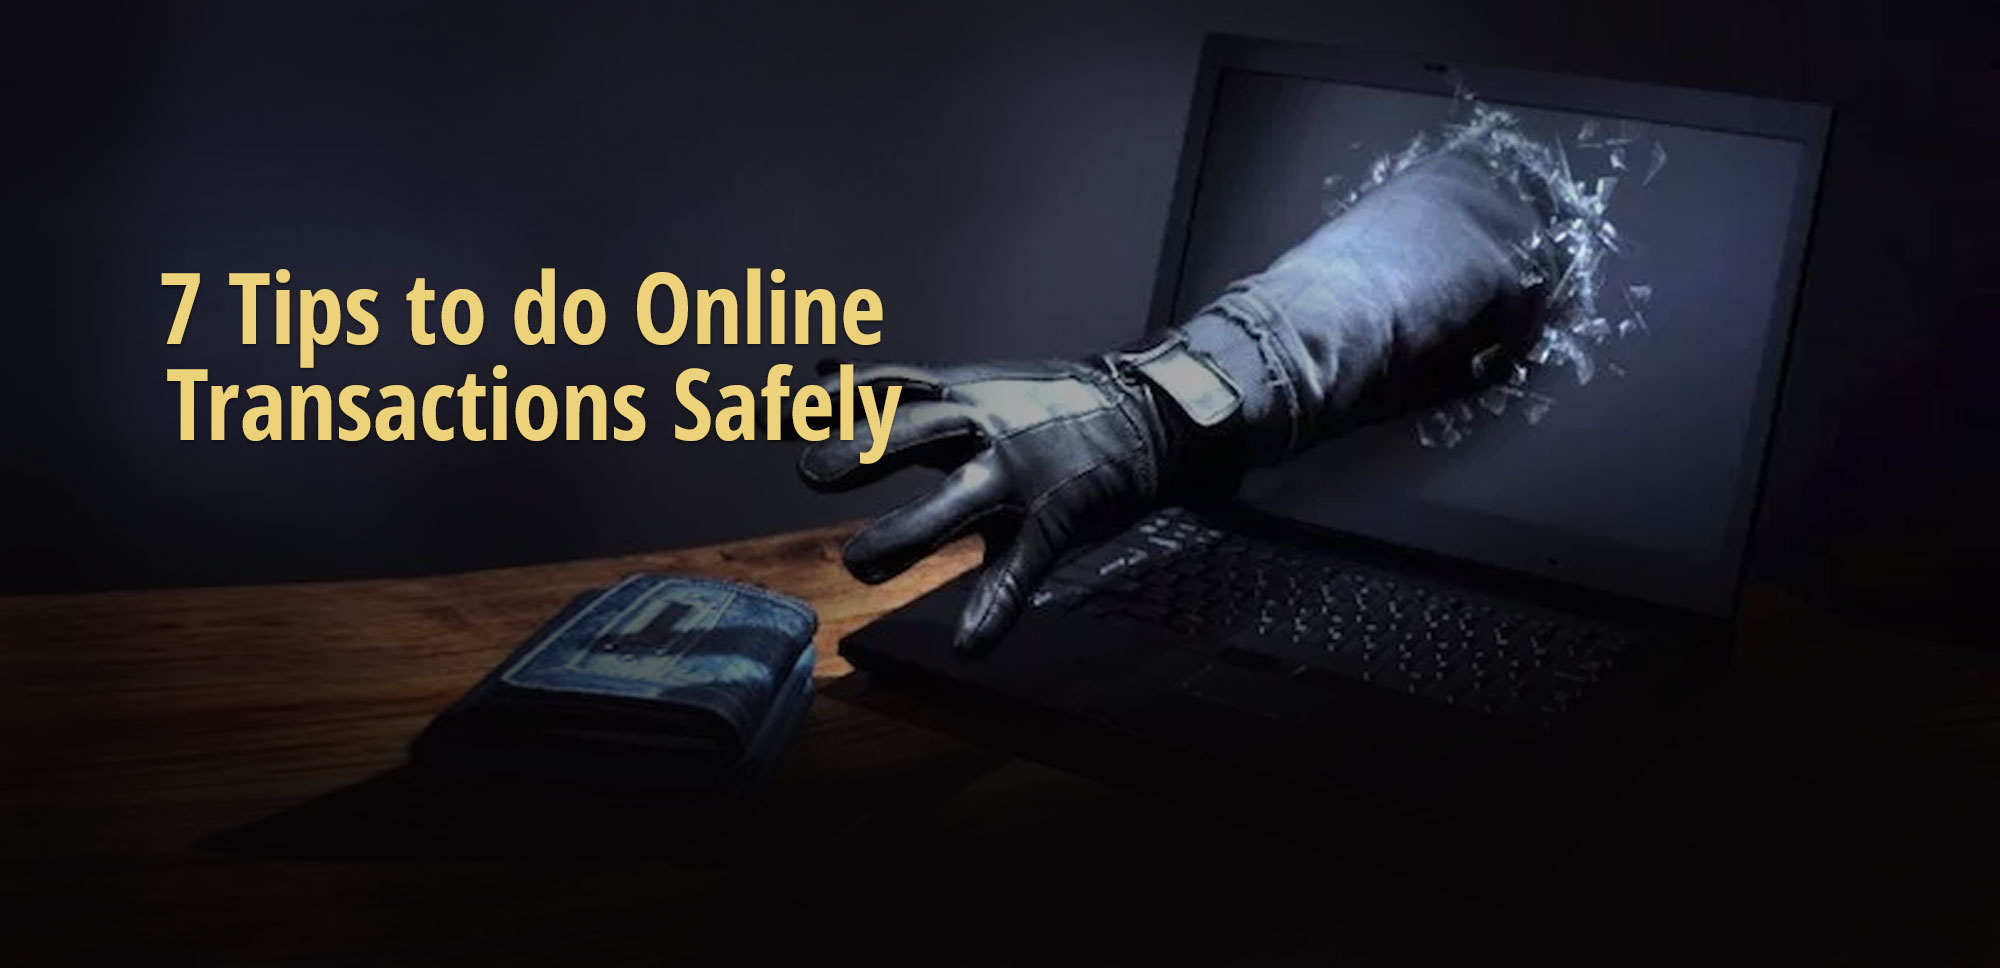 Cât de sigure sunt tranzacțiile online și ce precauții ar trebui să luați atunci când faceți cumpărături online?